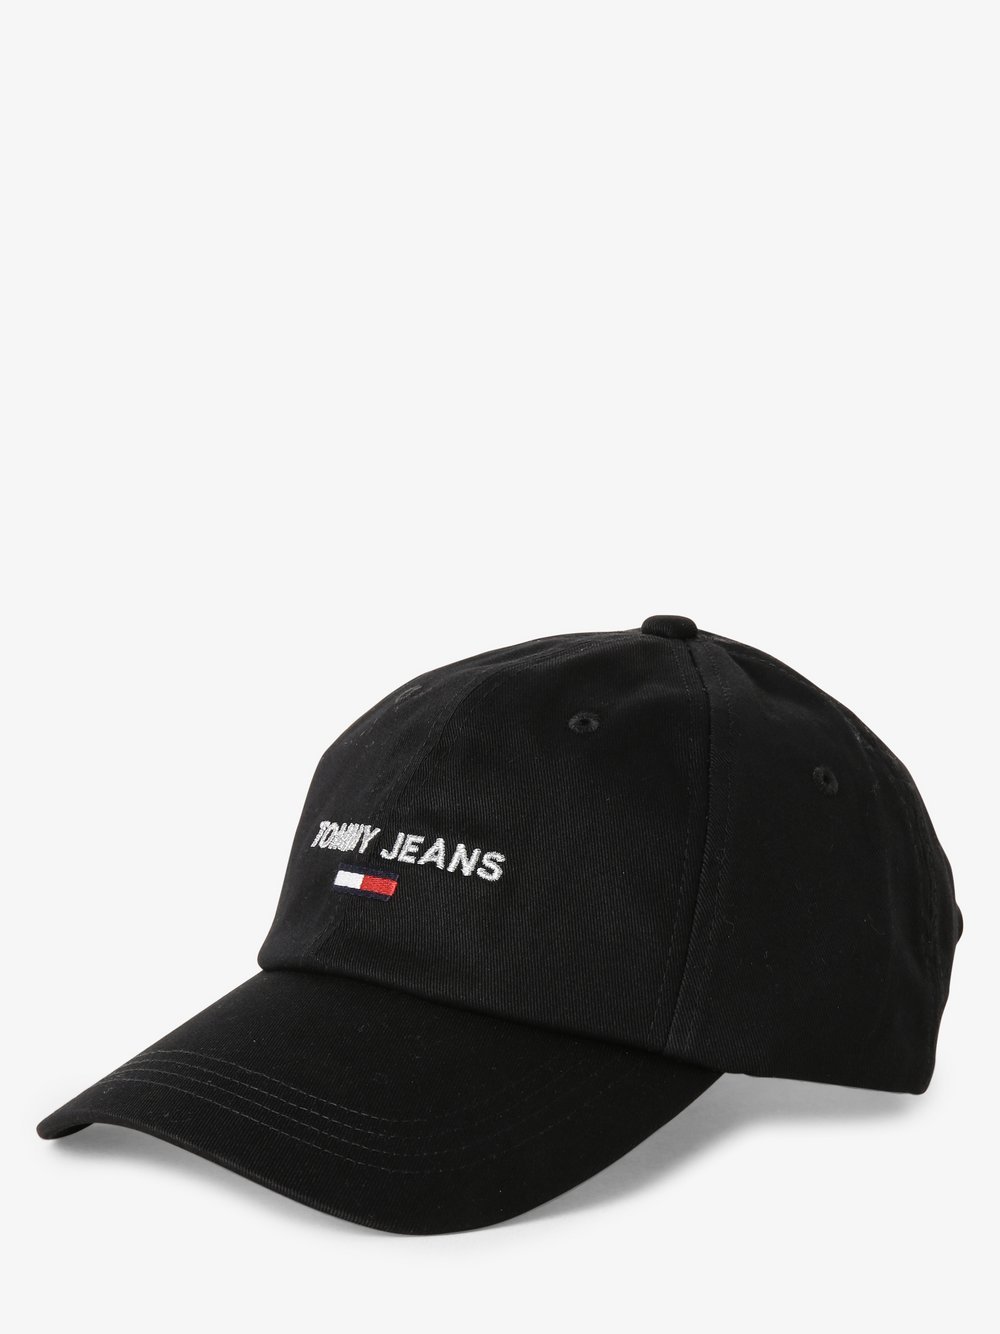 Tommy Jeans - Damska czapka z daszkiem, czarny